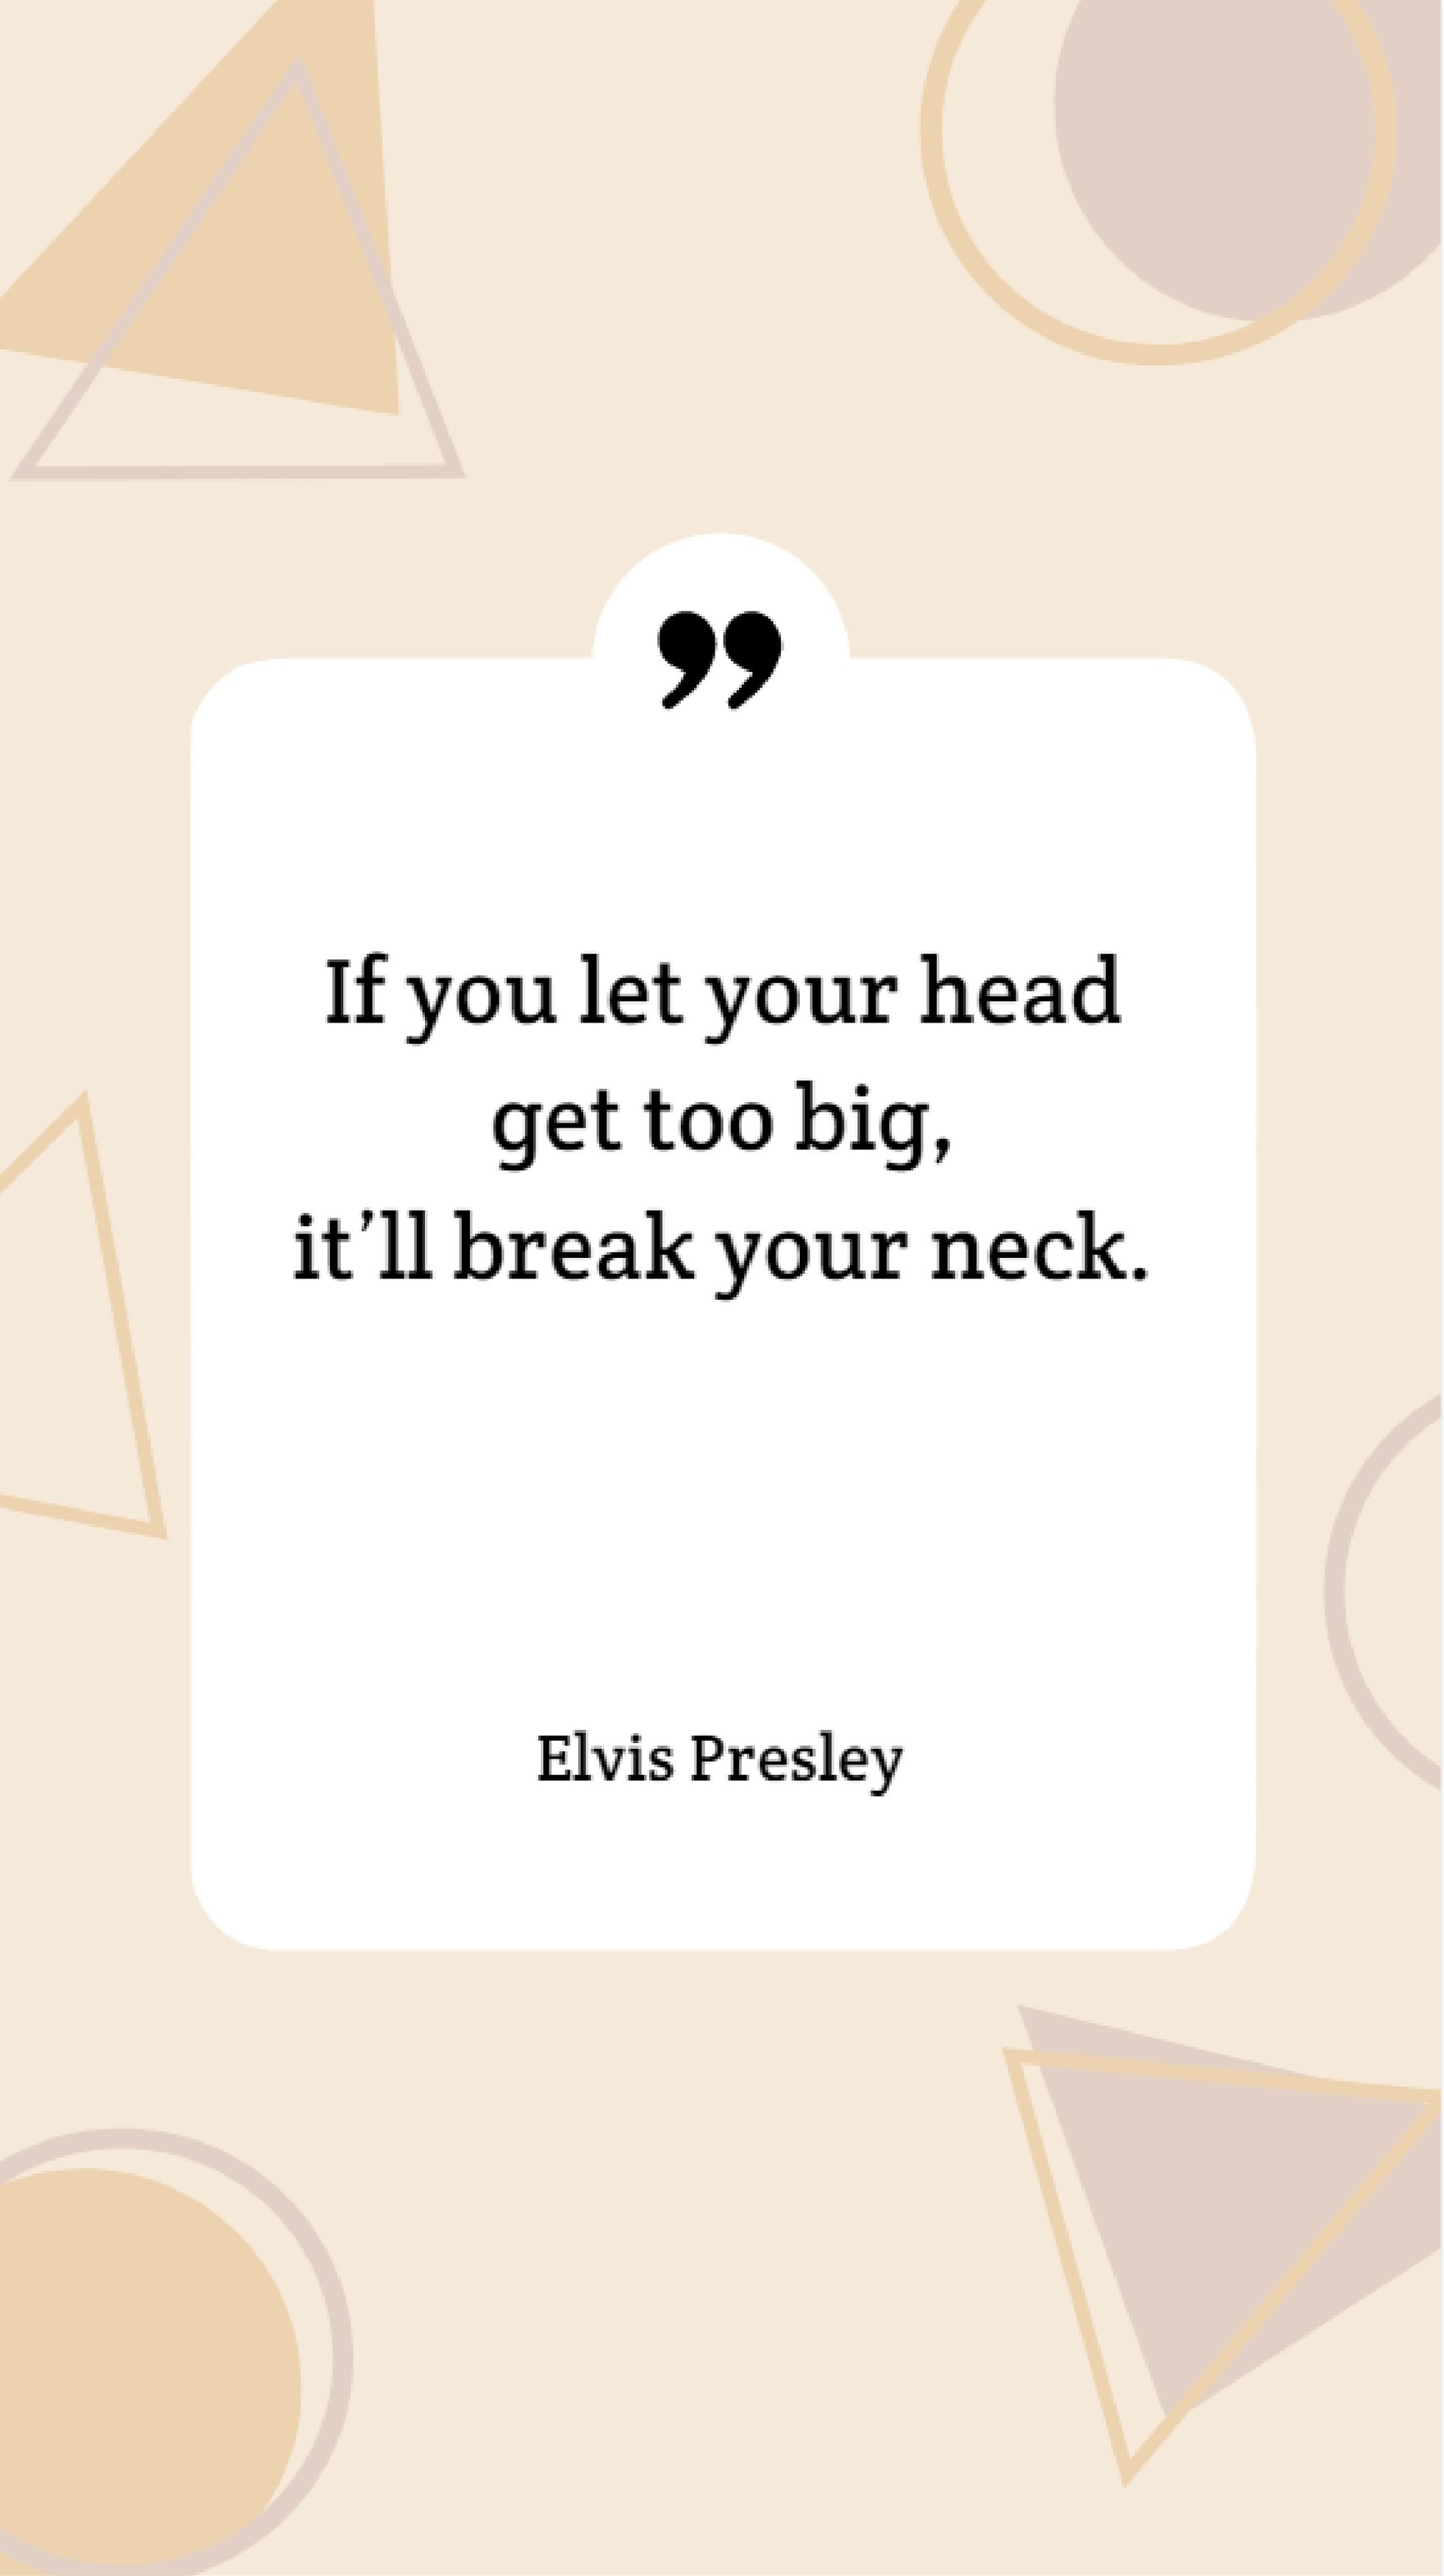 Elvis Presley - If you let your head get too big, it’ll break your neck.